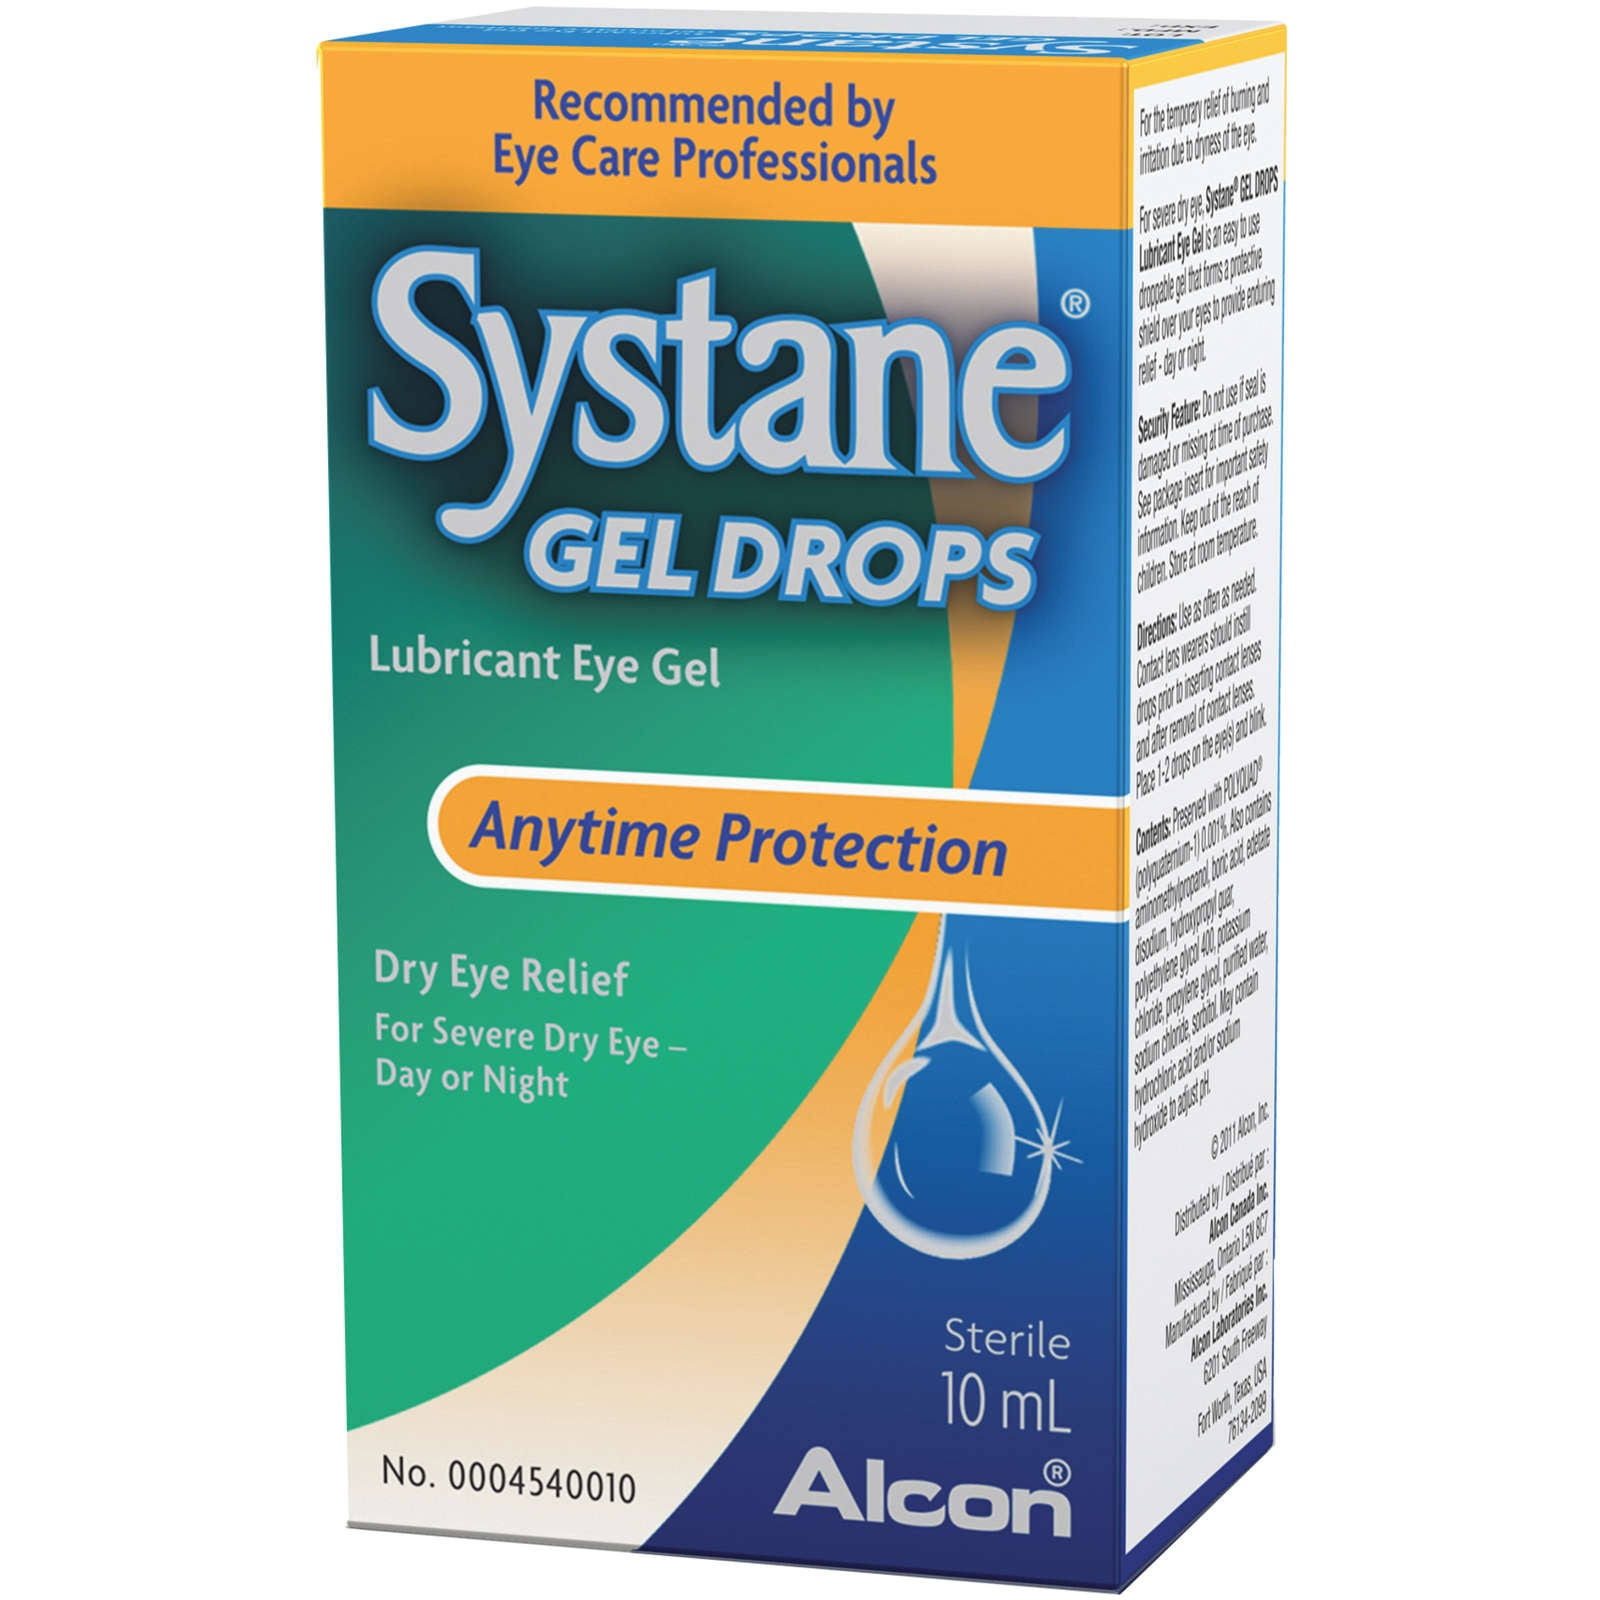 SYSTANE Gel Drops Eye Lubricant - 10 ml